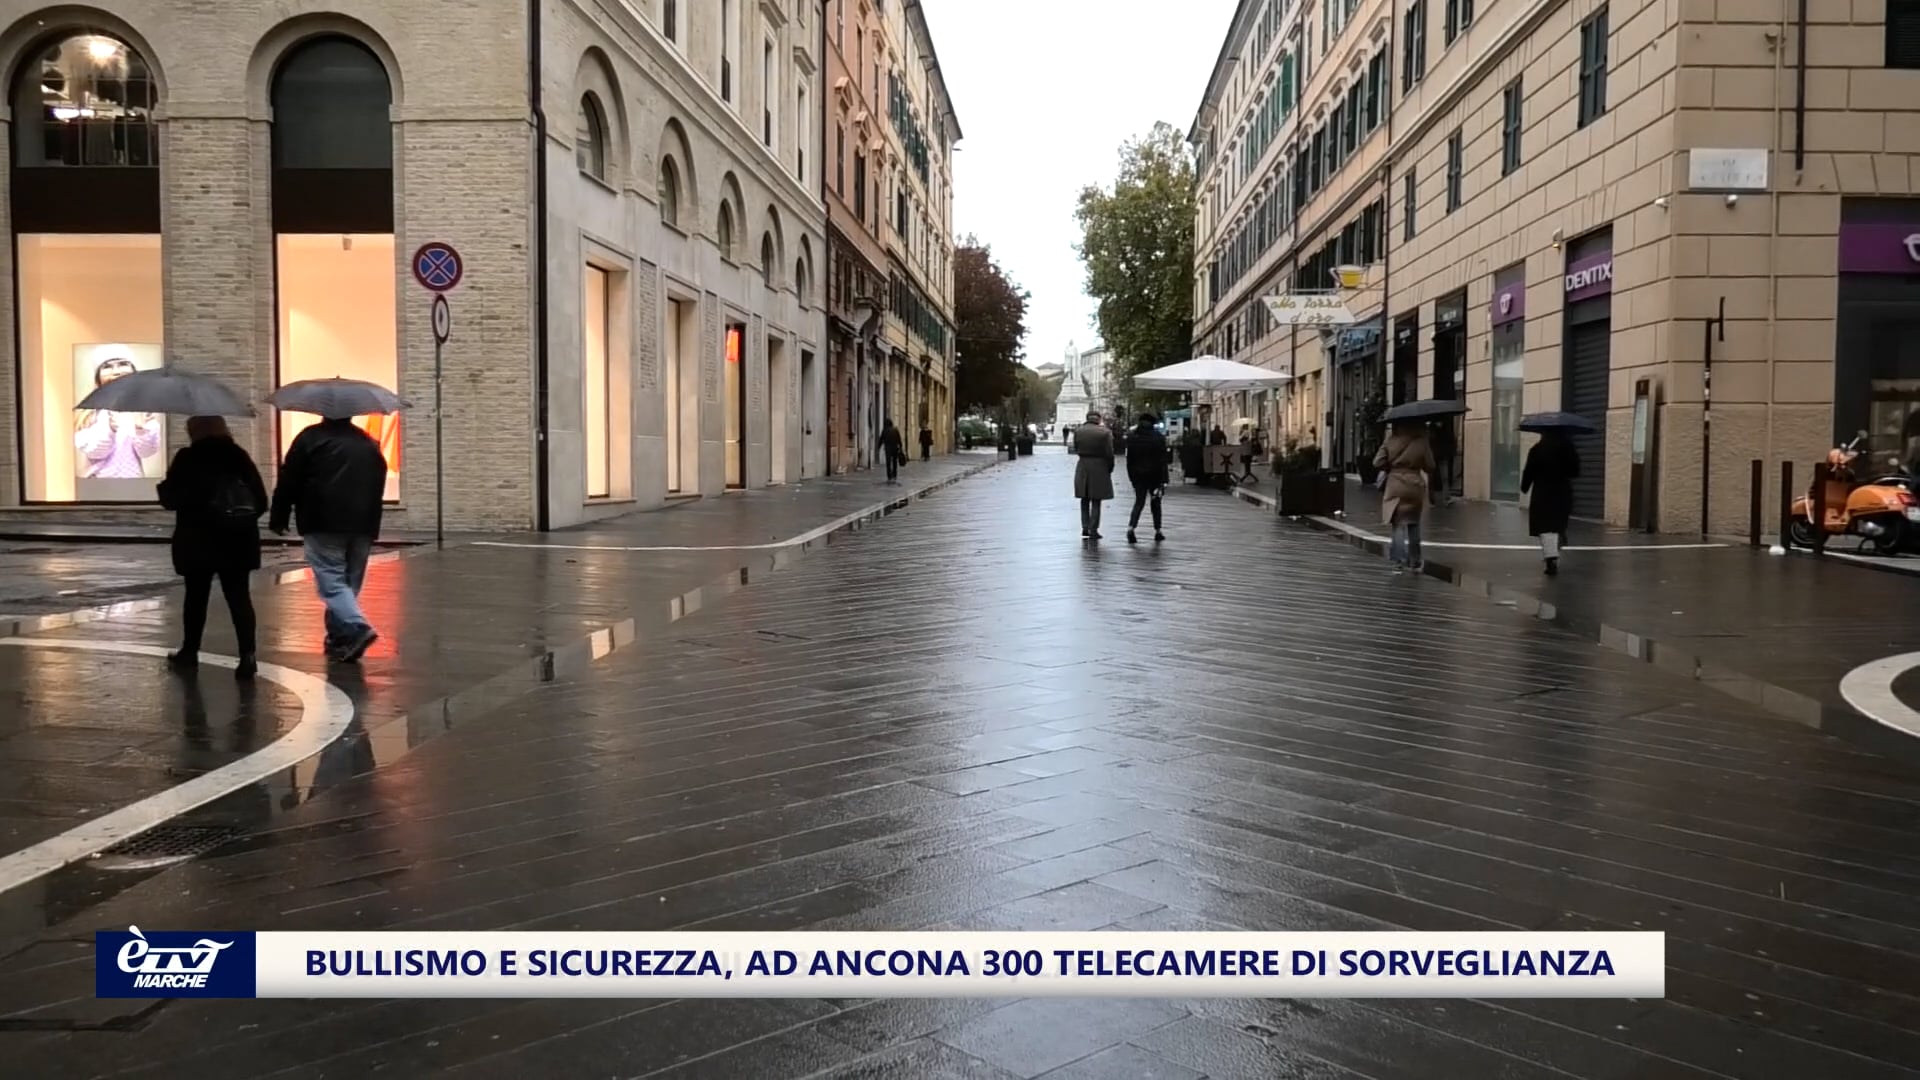 Bullismo e sicurezza, ad Ancona 300 telecamere di videosorveglianza